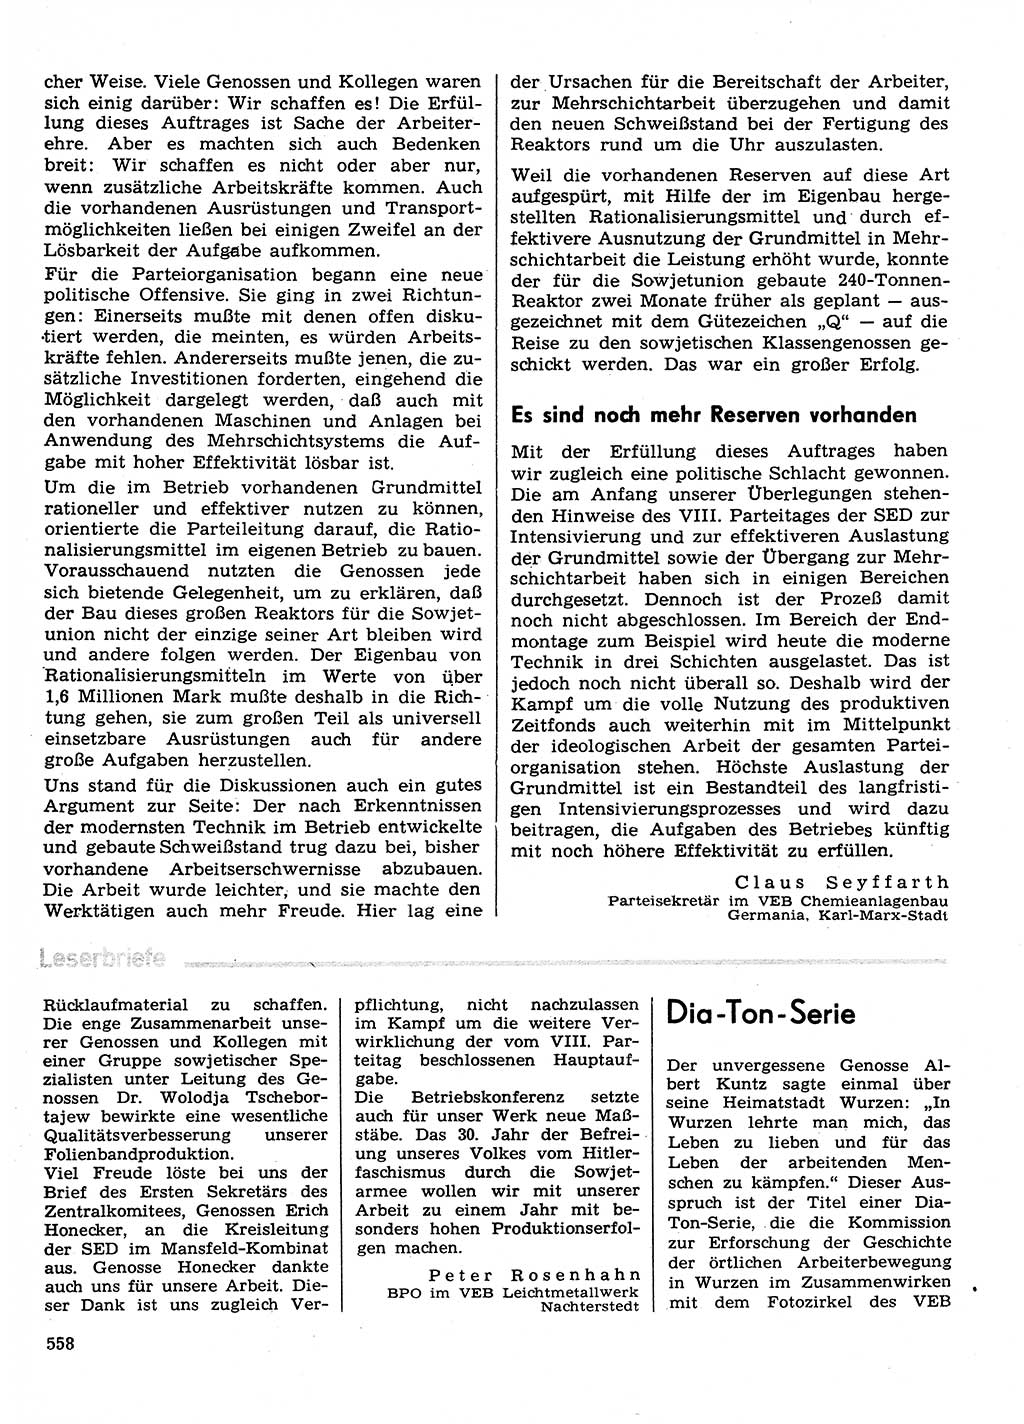 Neuer Weg (NW), Organ des Zentralkomitees (ZK) der SED (Sozialistische Einheitspartei Deutschlands) für Fragen des Parteilebens, 30. Jahrgang [Deutsche Demokratische Republik (DDR)] 1975, Seite 558 (NW ZK SED DDR 1975, S. 558)